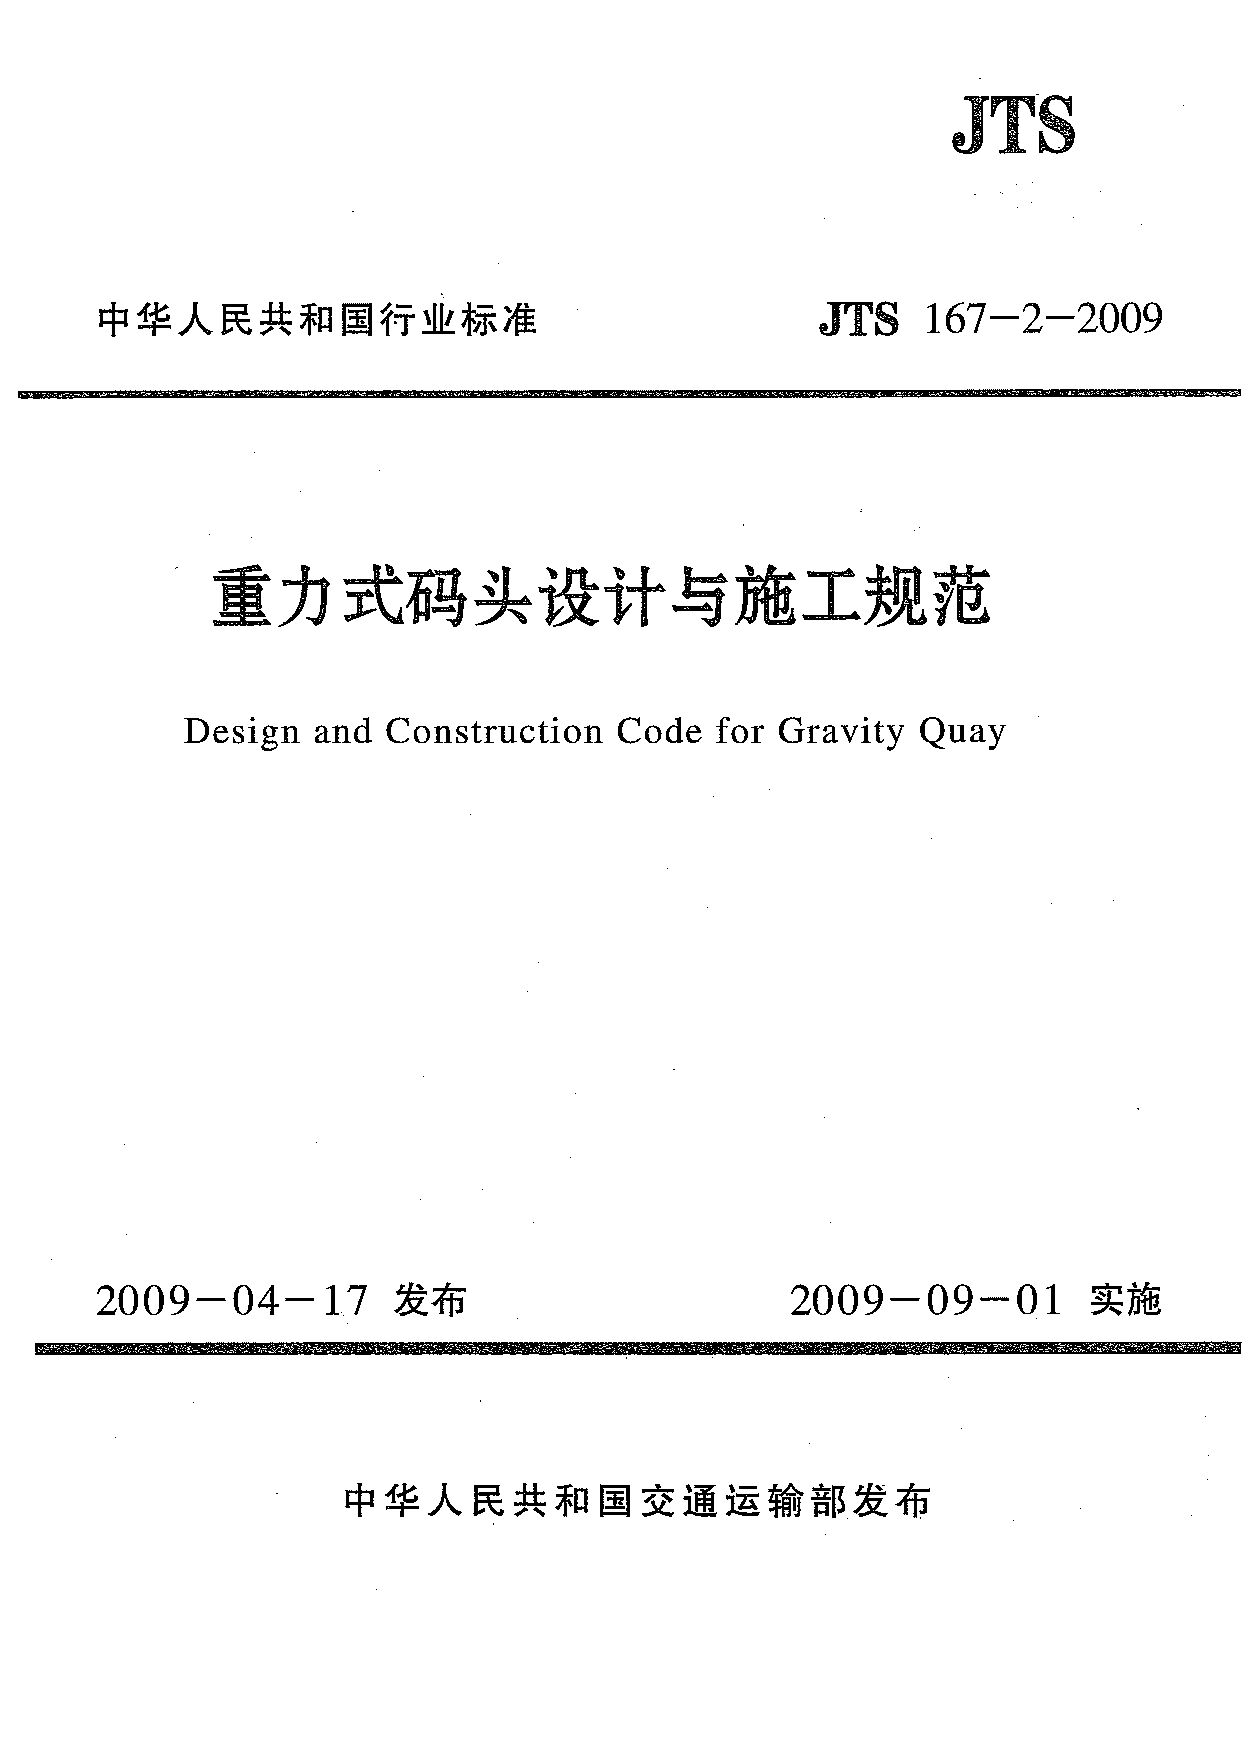 JTS 167-2-2009封面图